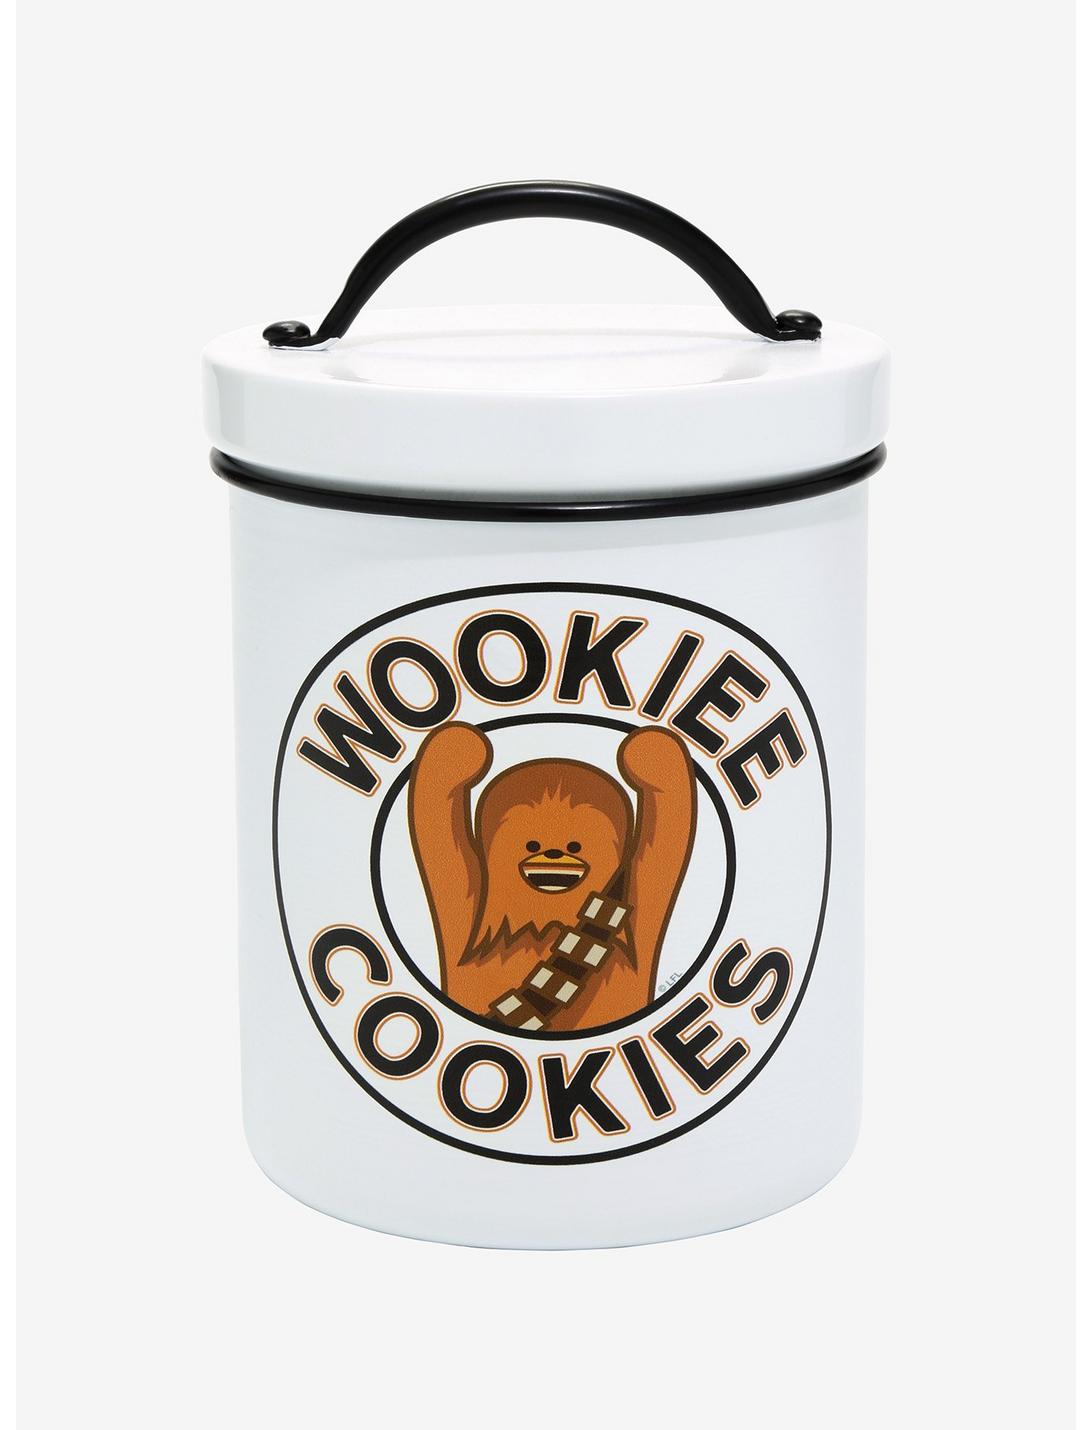 Star Wars Wookiee Cookies Cookie Jar - BoxLunch Exclusive, , hi-res